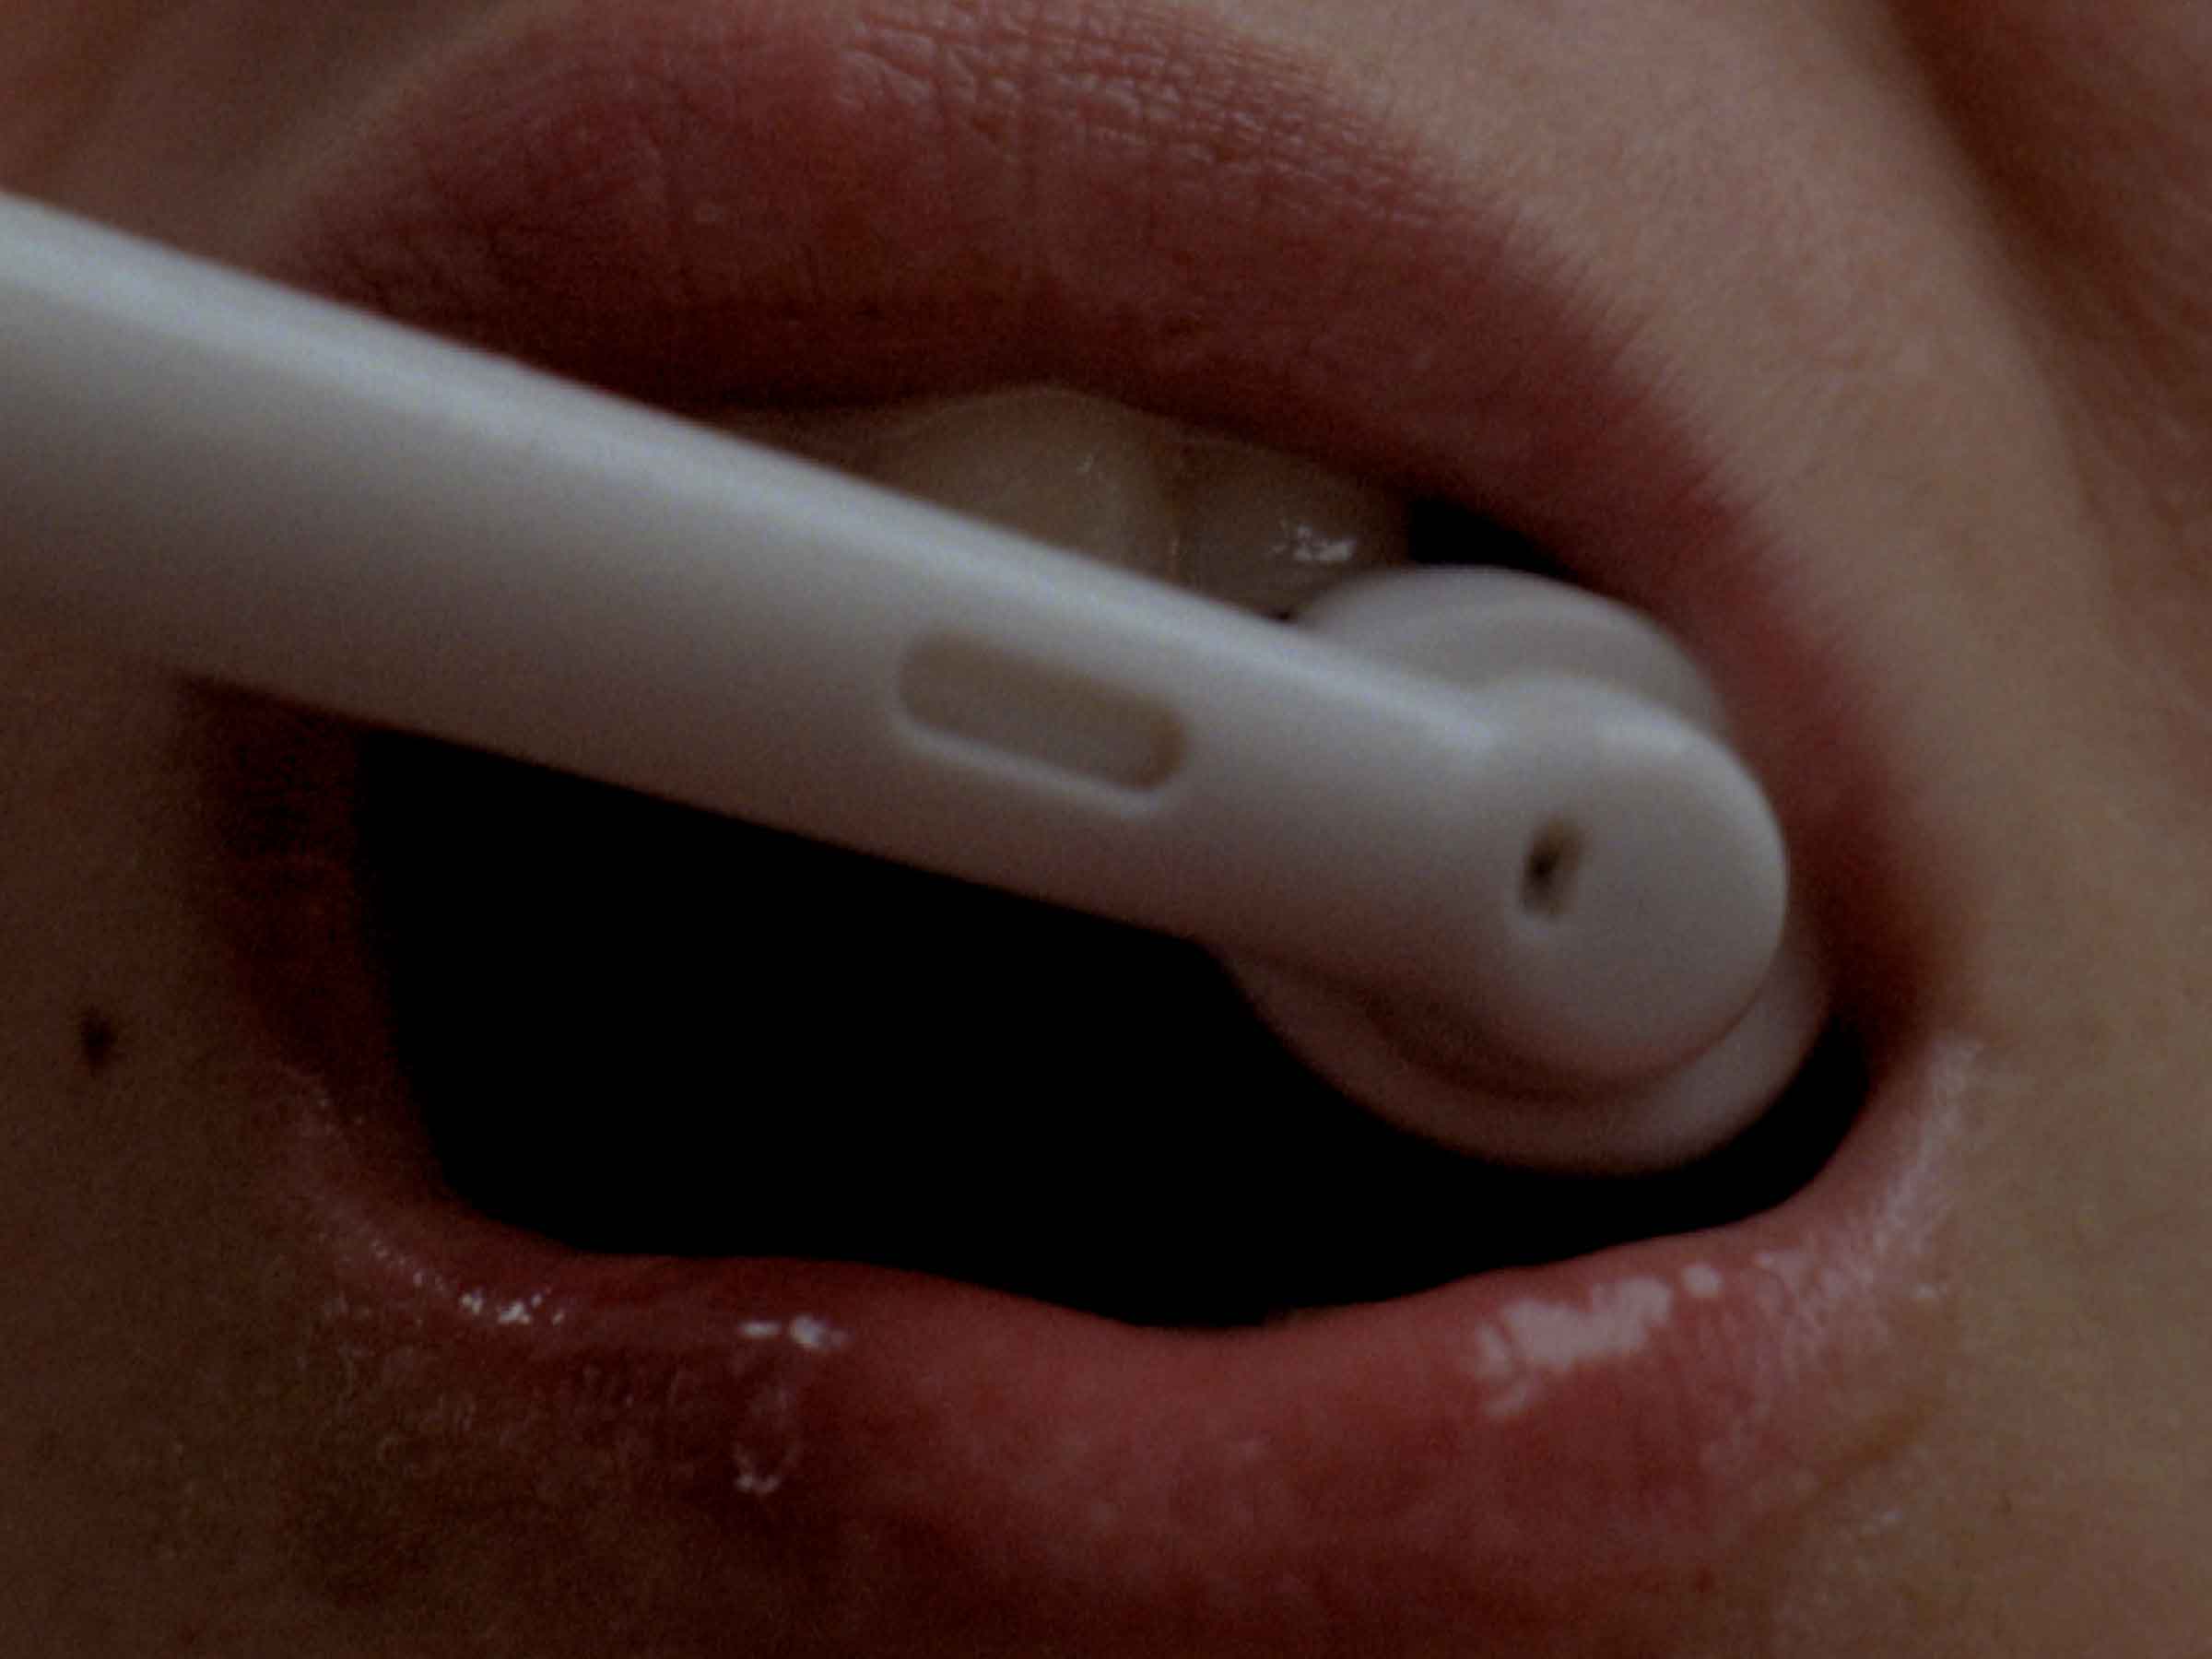 16mm film still: a woman brushing her teeth